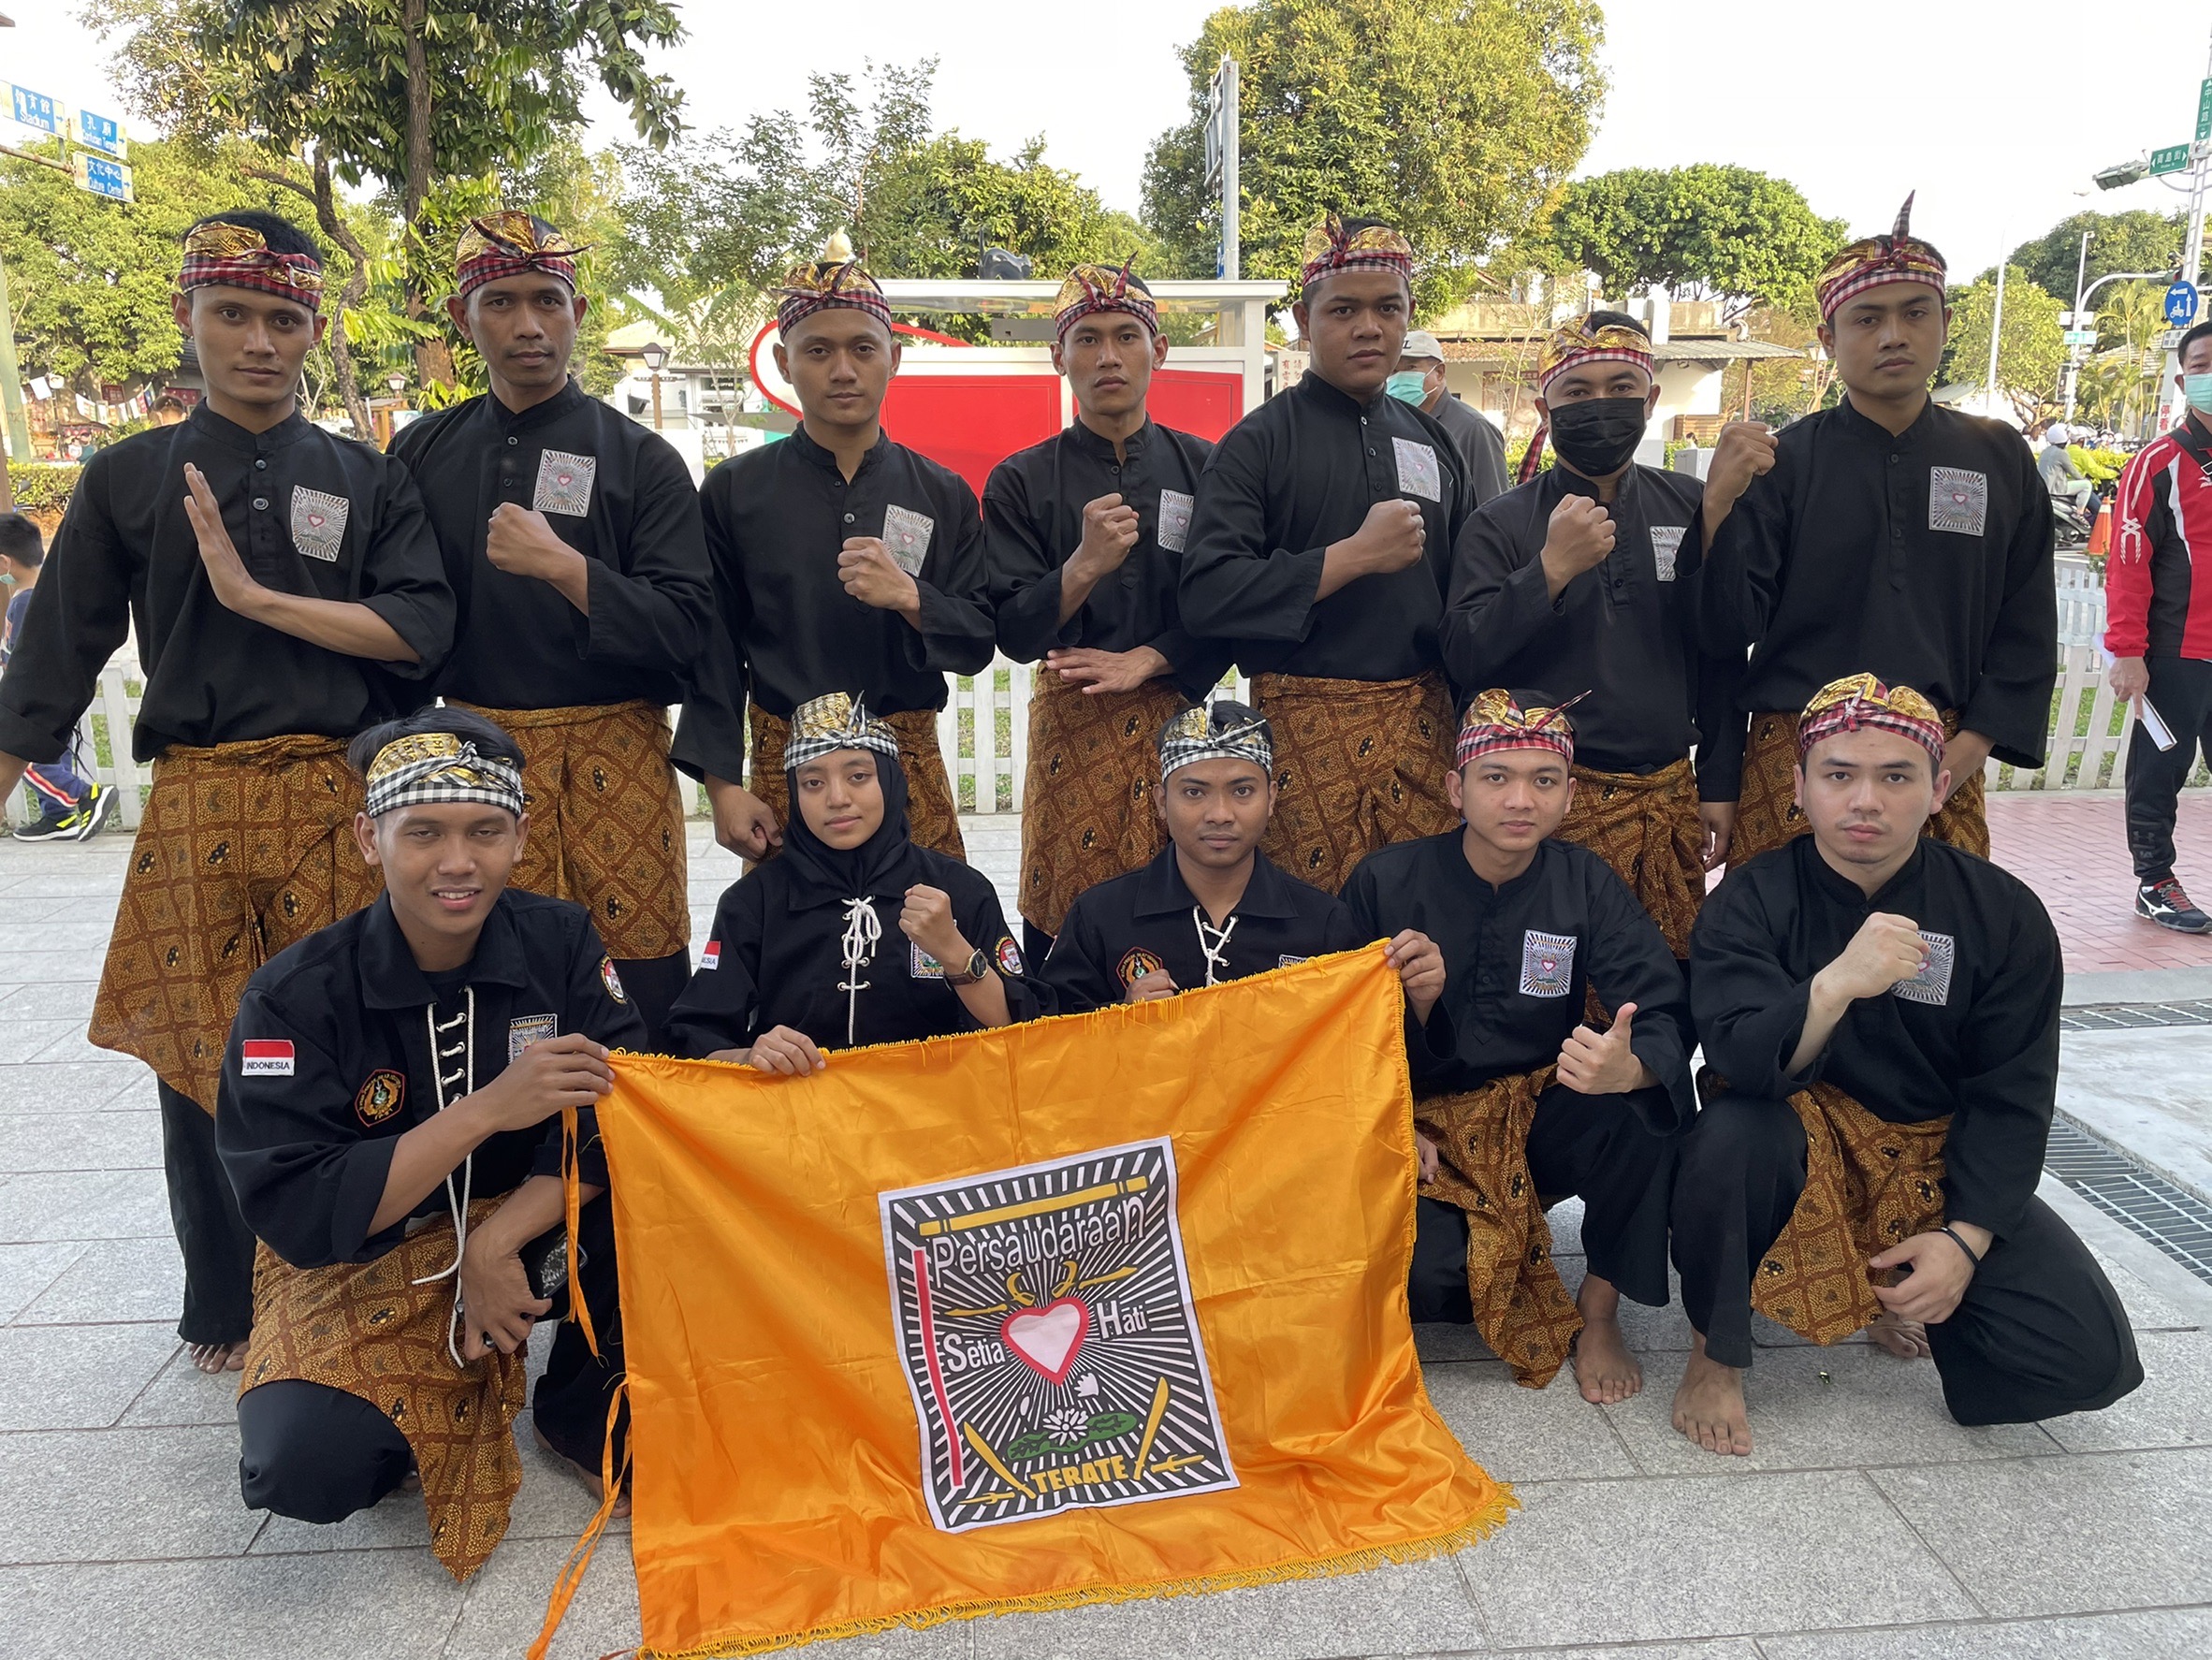 Tim pencak silat Indonesia yang diorganisir oleh mahasiswa Indonesia dari Kaoyuan University